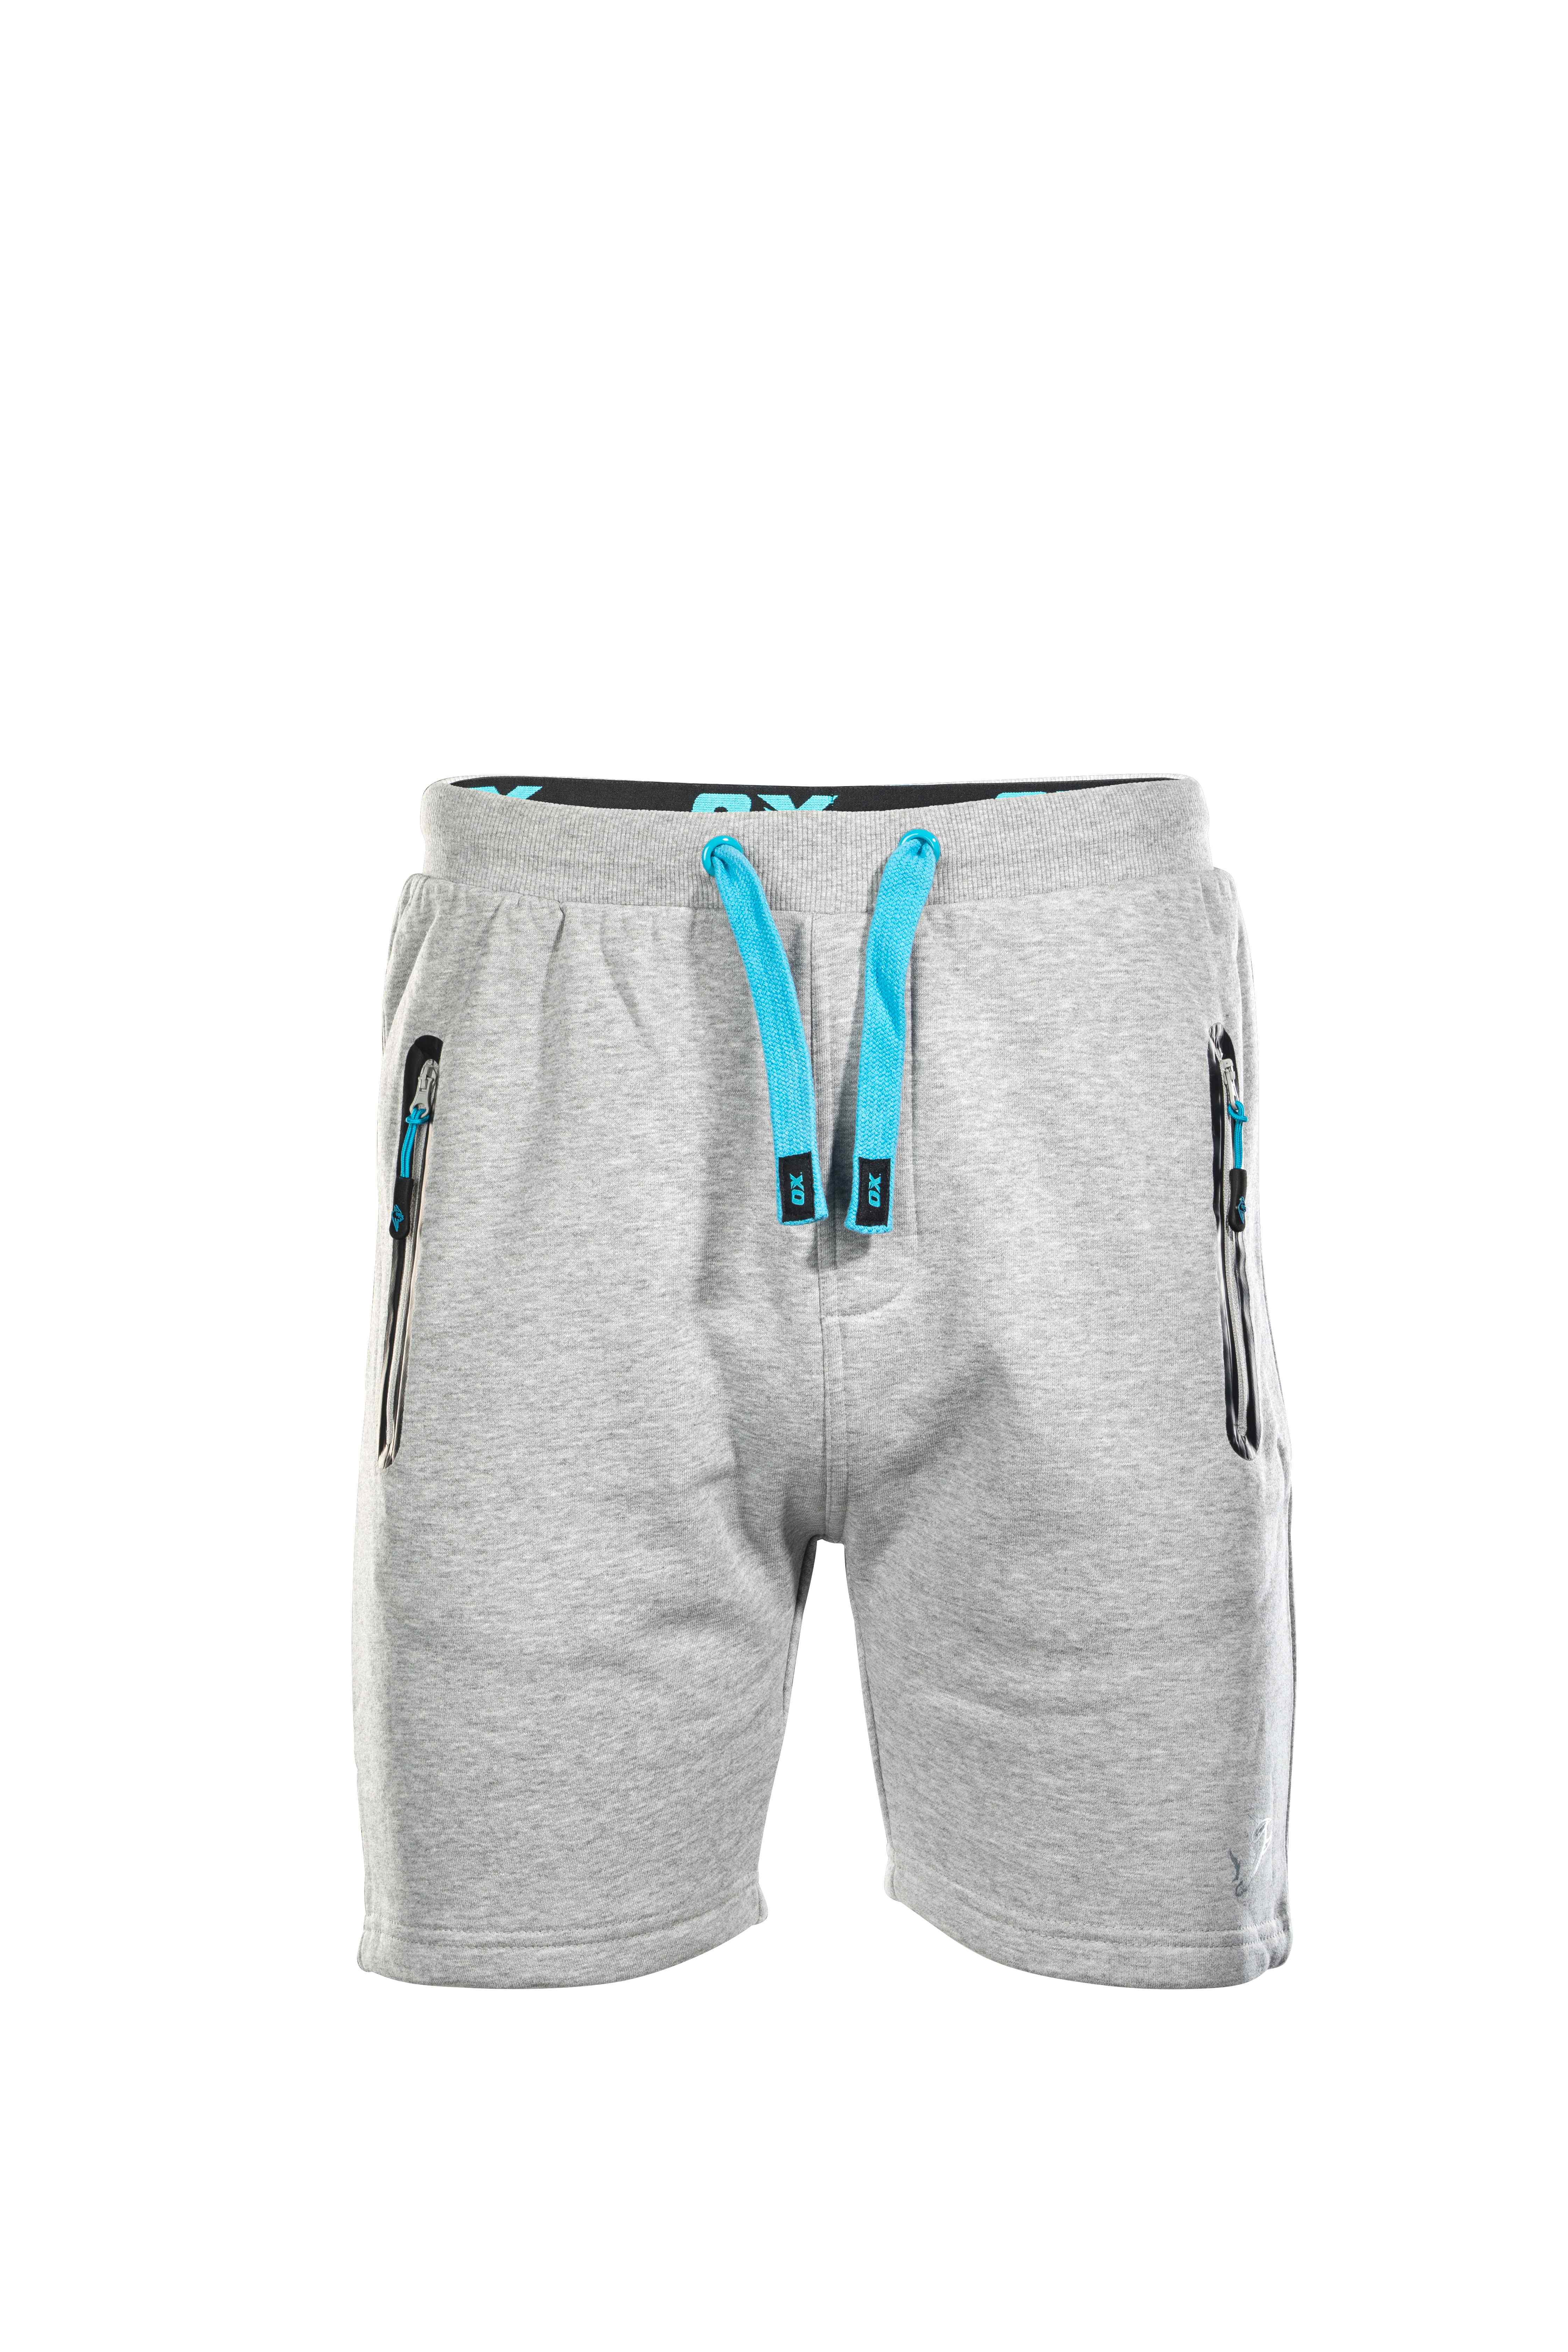 OX Jogger Shorts - Grey - 32